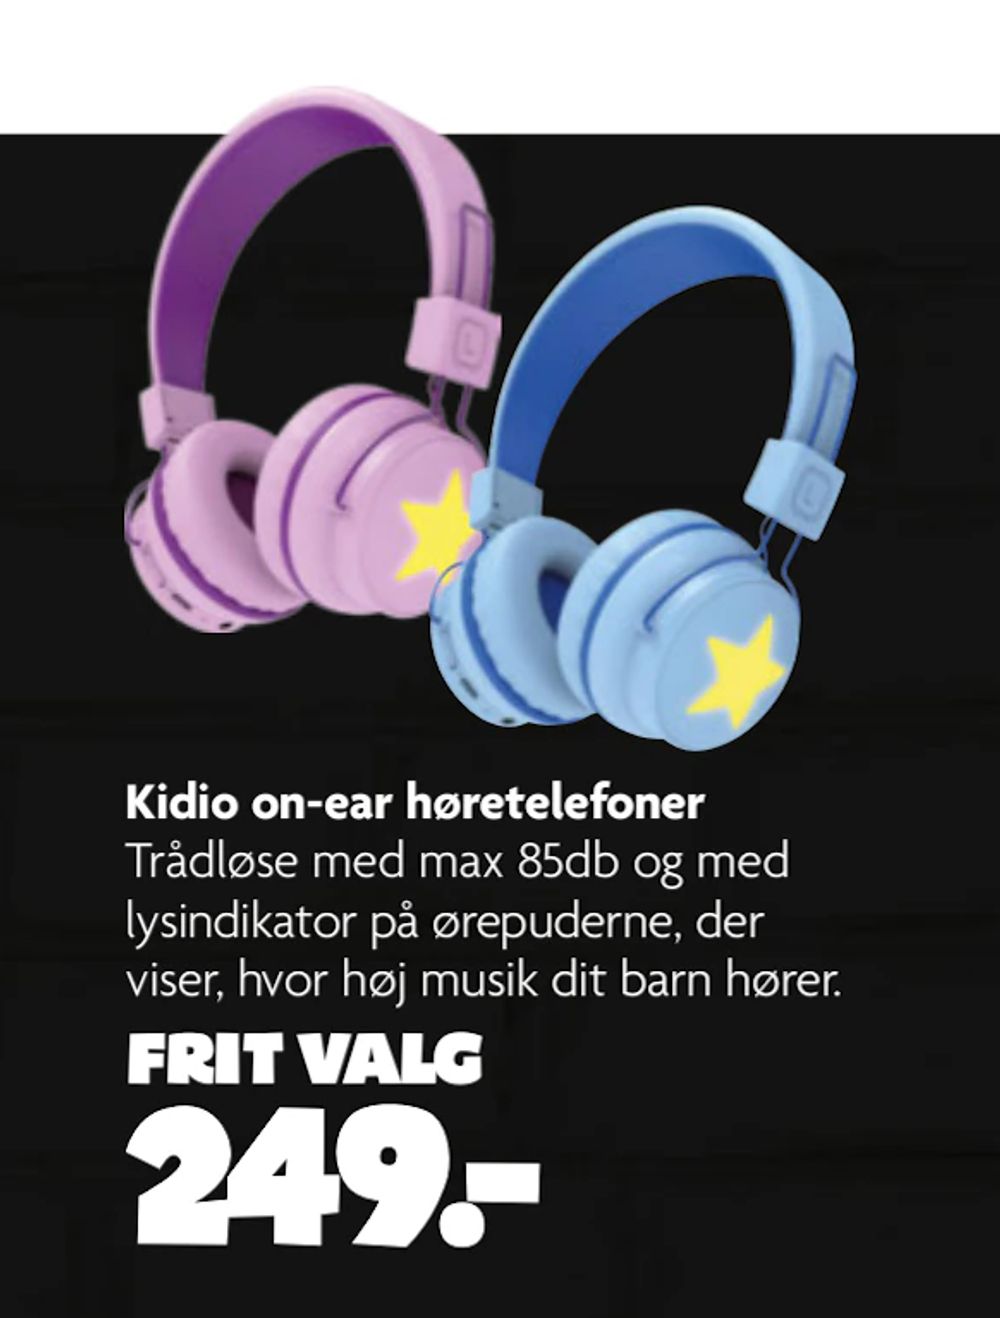 Tilbud på Kidio on-ear høretelefoner fra BR til 249 kr.